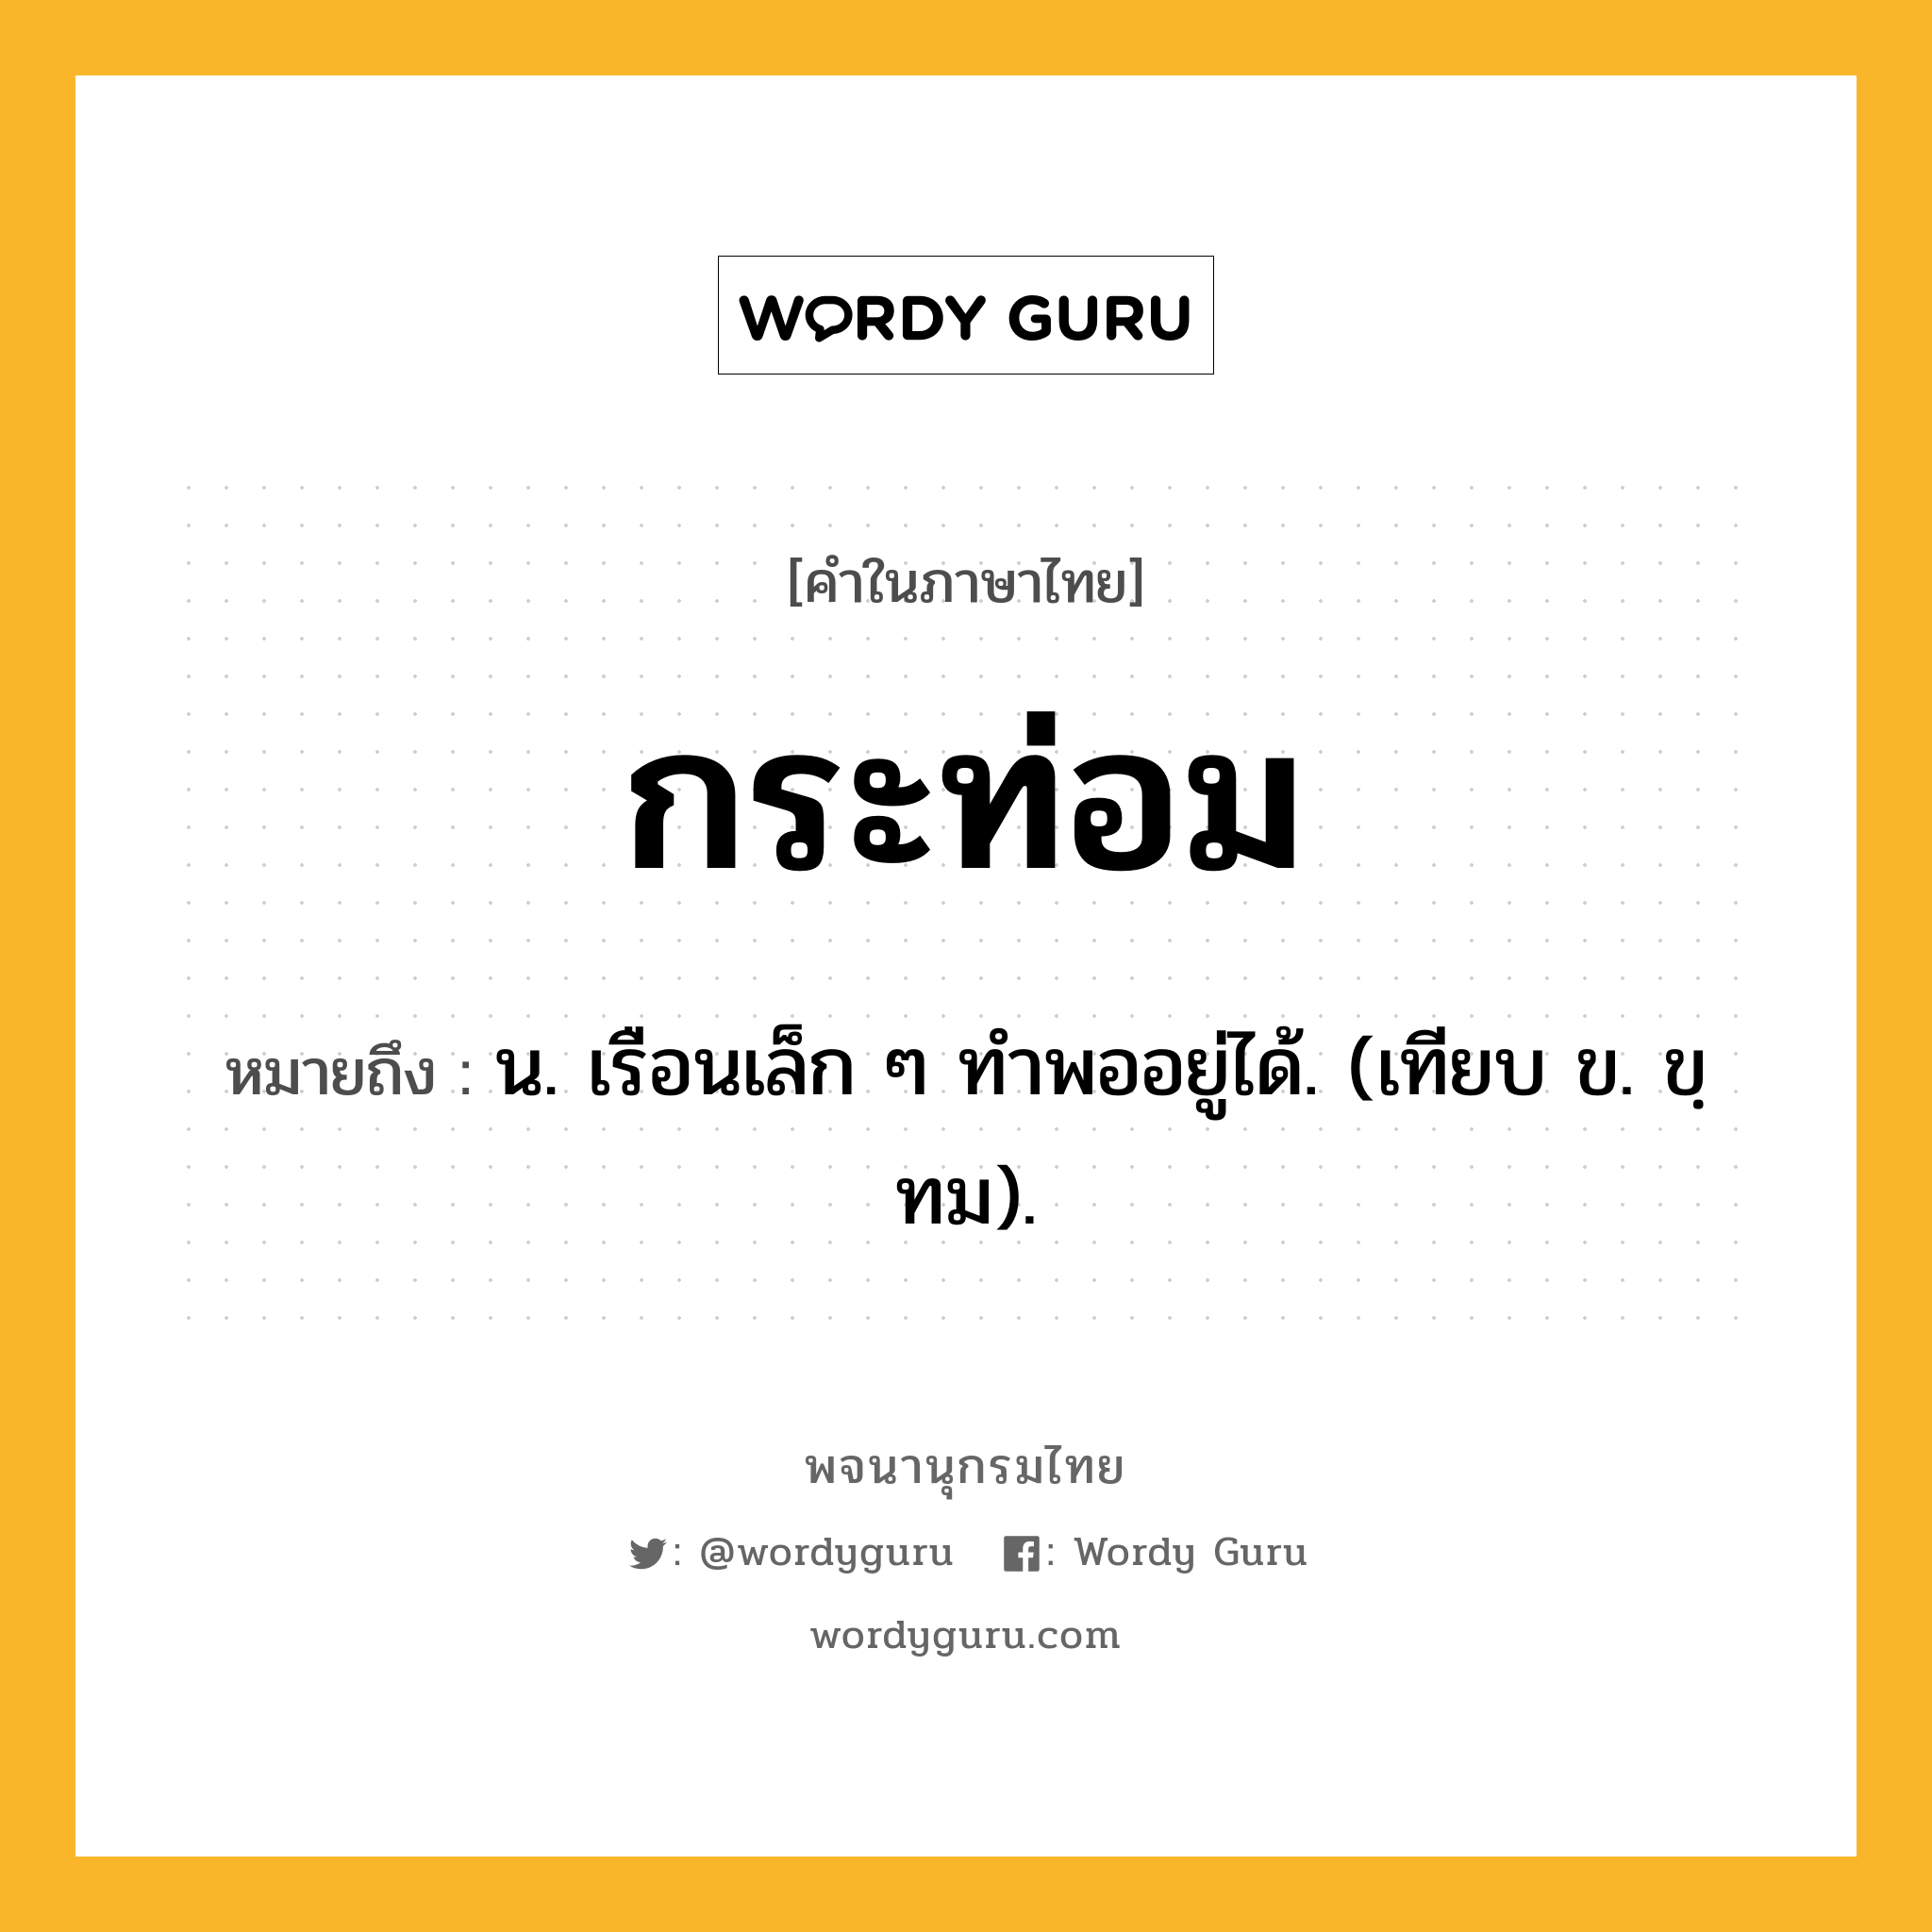 กระท่อม ความหมาย หมายถึงอะไร?, คำในภาษาไทย กระท่อม หมายถึง น. เรือนเล็ก ๆ ทําพออยู่ได้. (เทียบ ข. ขฺทม).